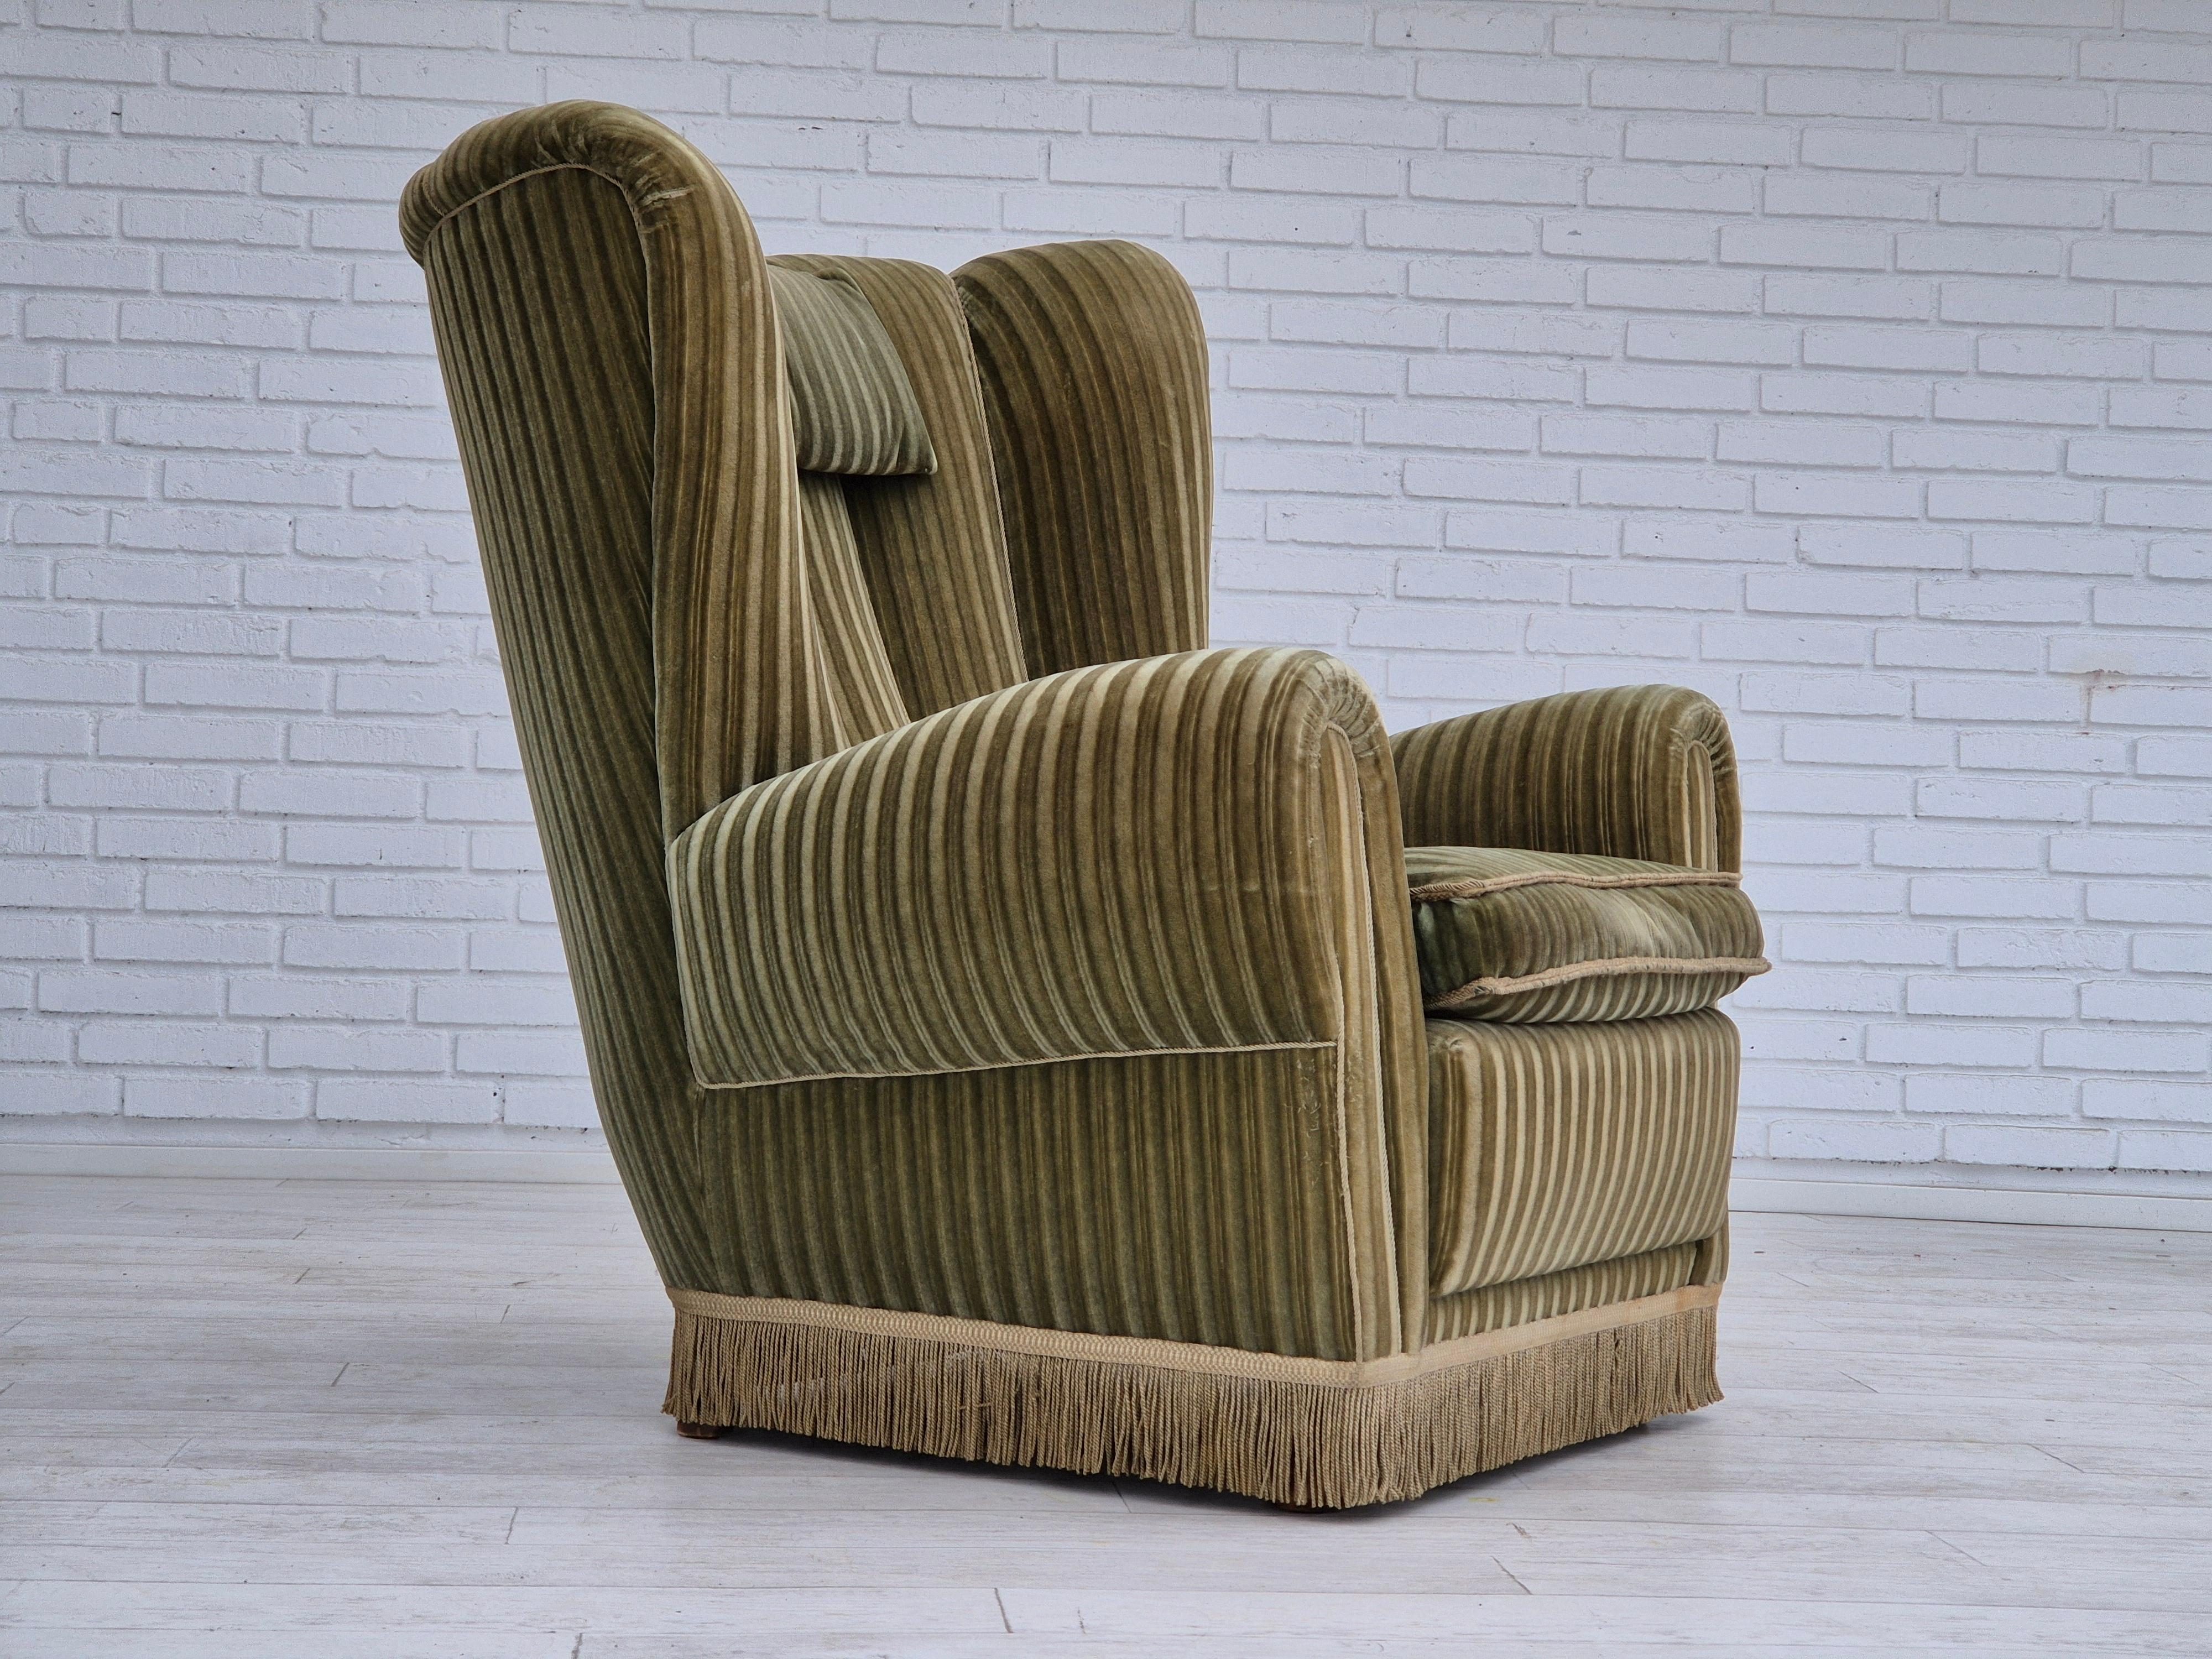 Fauteuil relax danois à dossier haut des années 1960 en très bon état d'origine : pas d'odeurs ni de taches. Velours d'ameublement vert d'origine. Ressorts dans l'assise, pieds en bois de hêtre. Fabriqué par un fabricant de meubles danois dans les